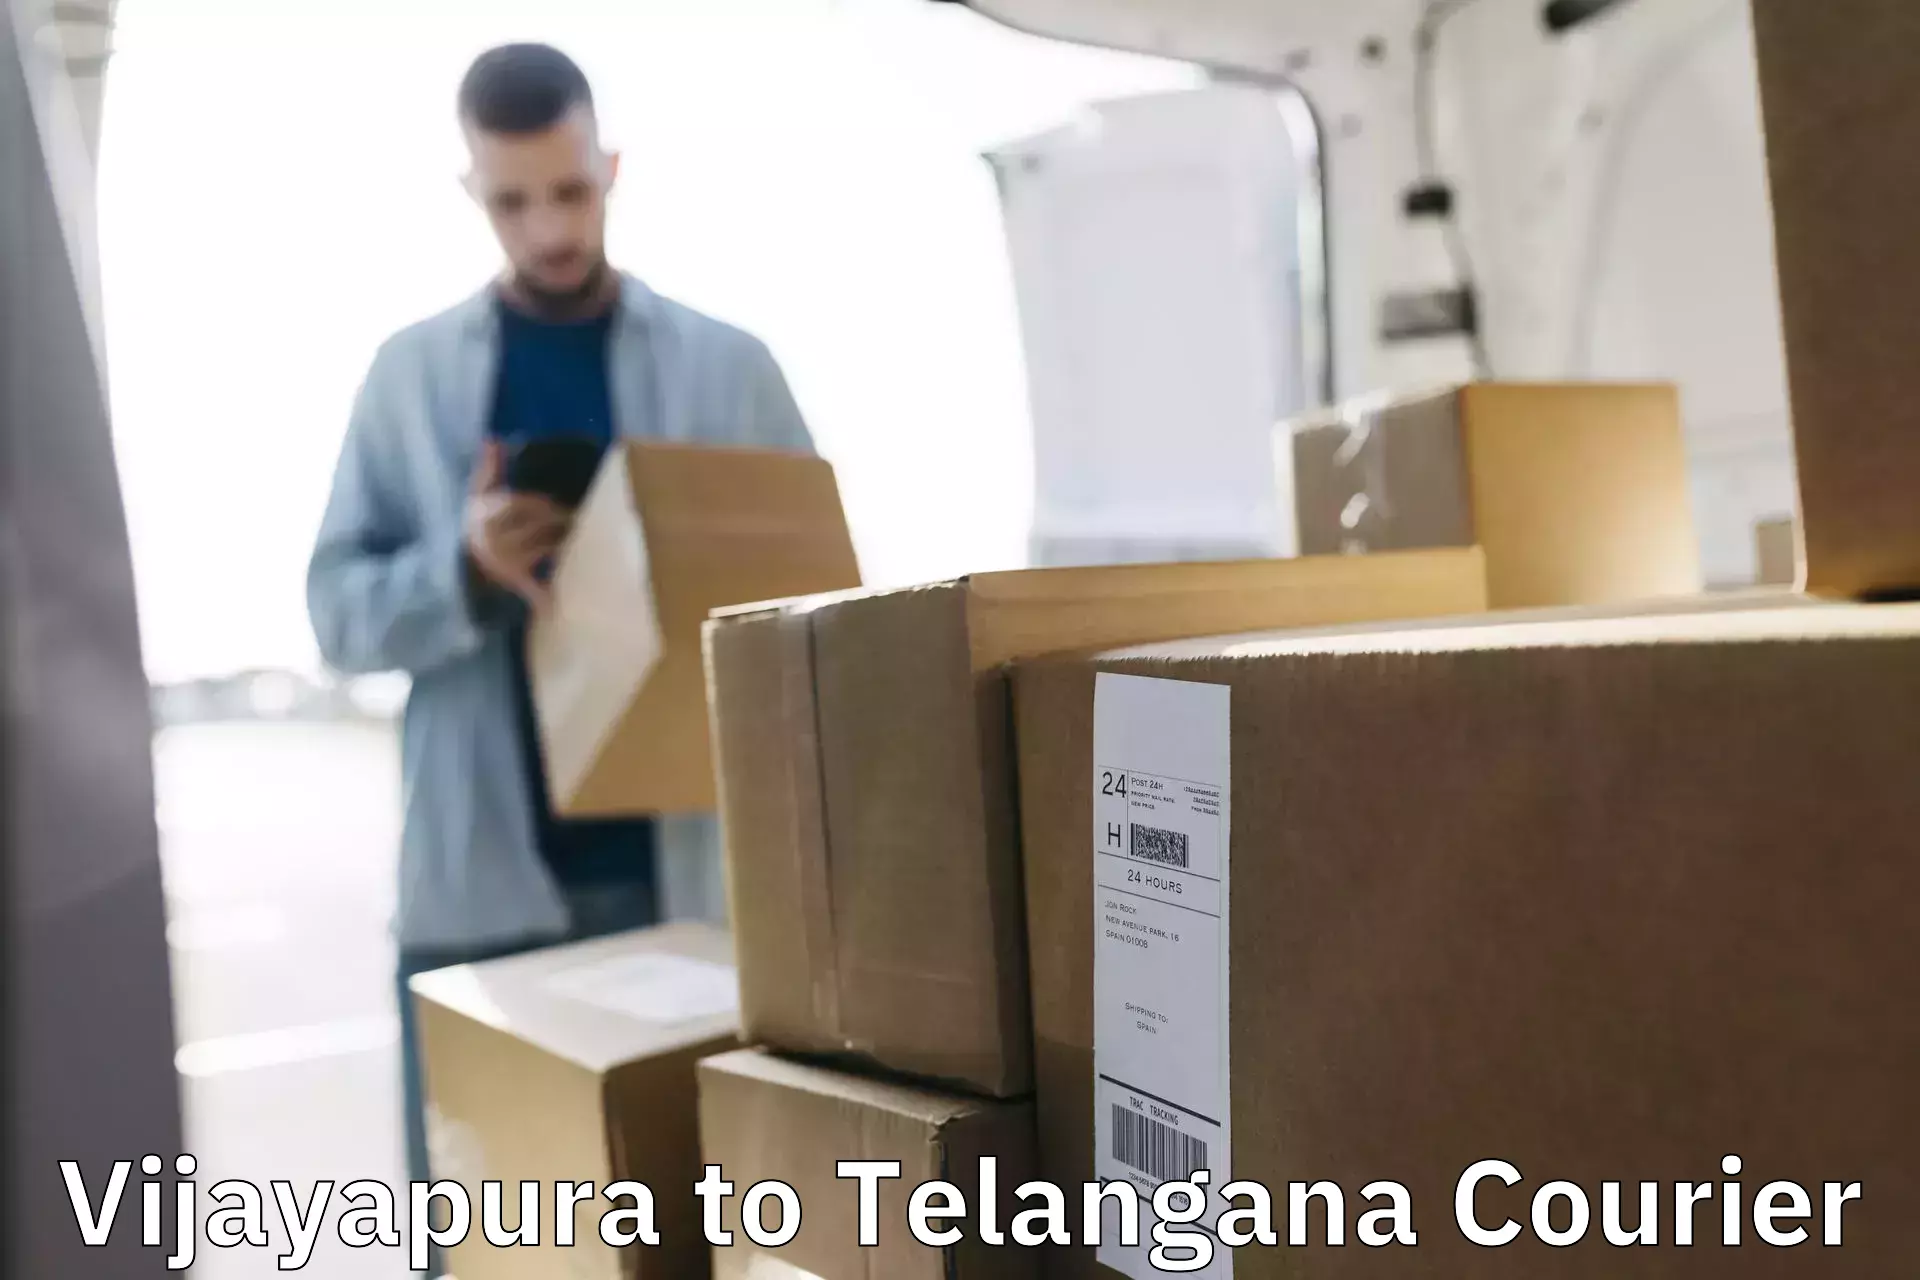 24-hour courier service Vijayapura to Hanamkonda